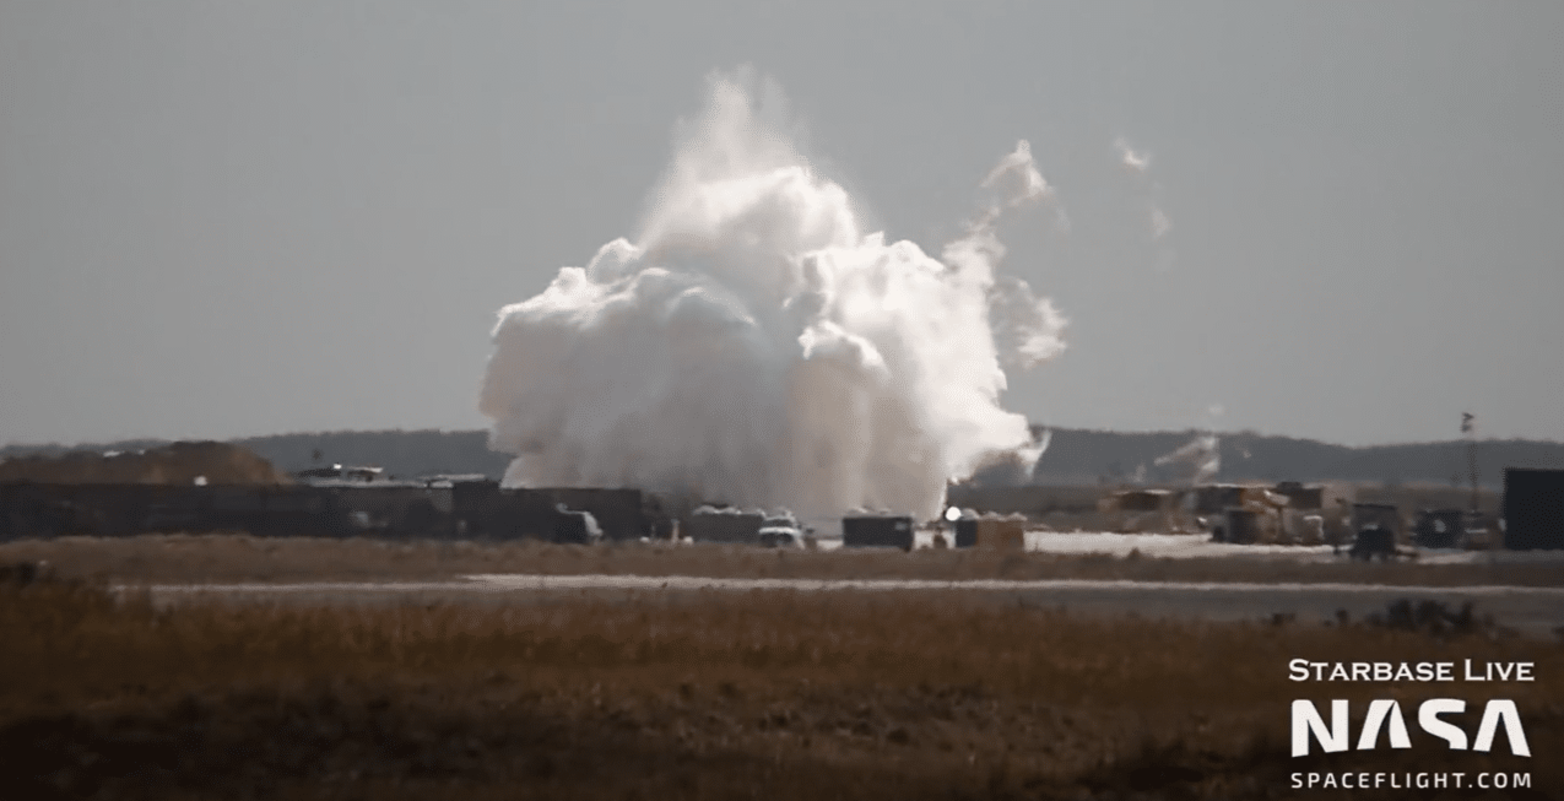 Acidente na SpaceX causa explosão de tanque durante abastecimento de nitrogênio, confira